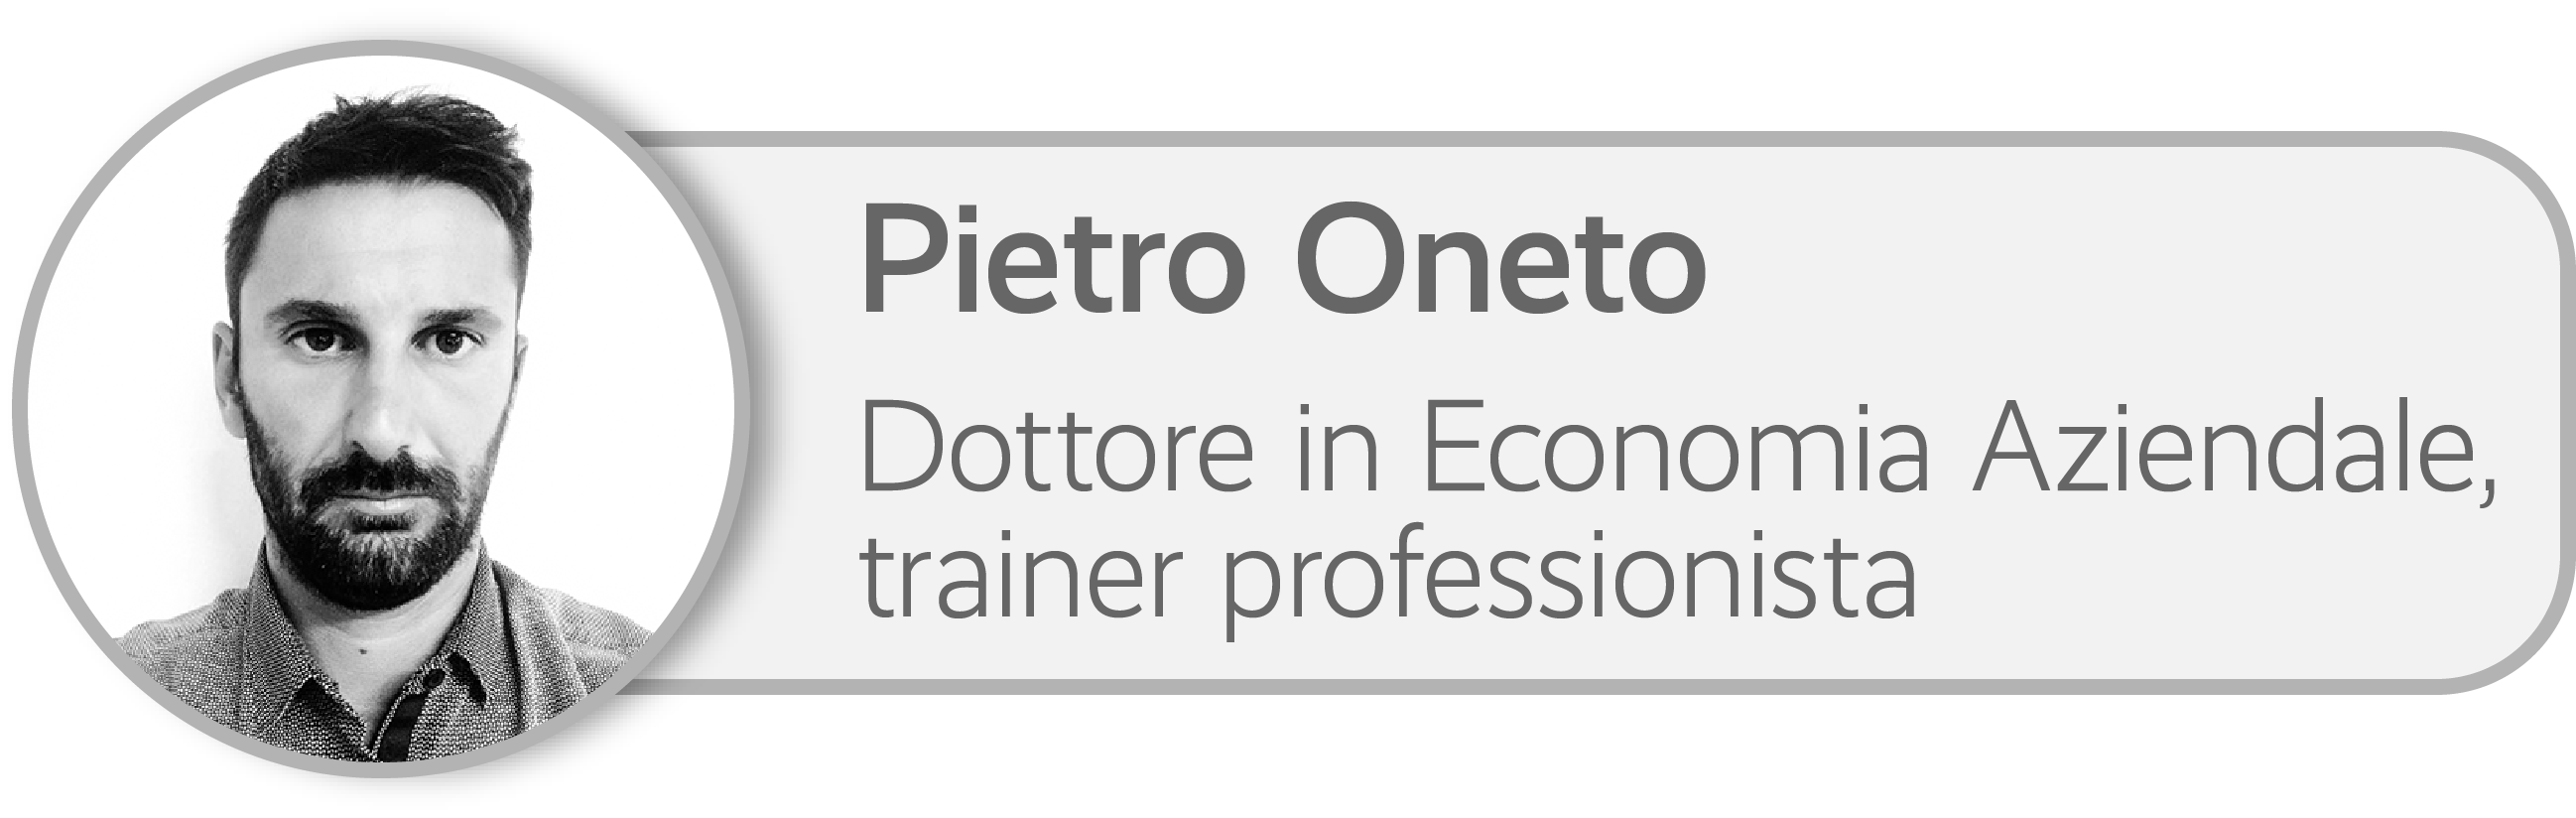 Pietro Oneto